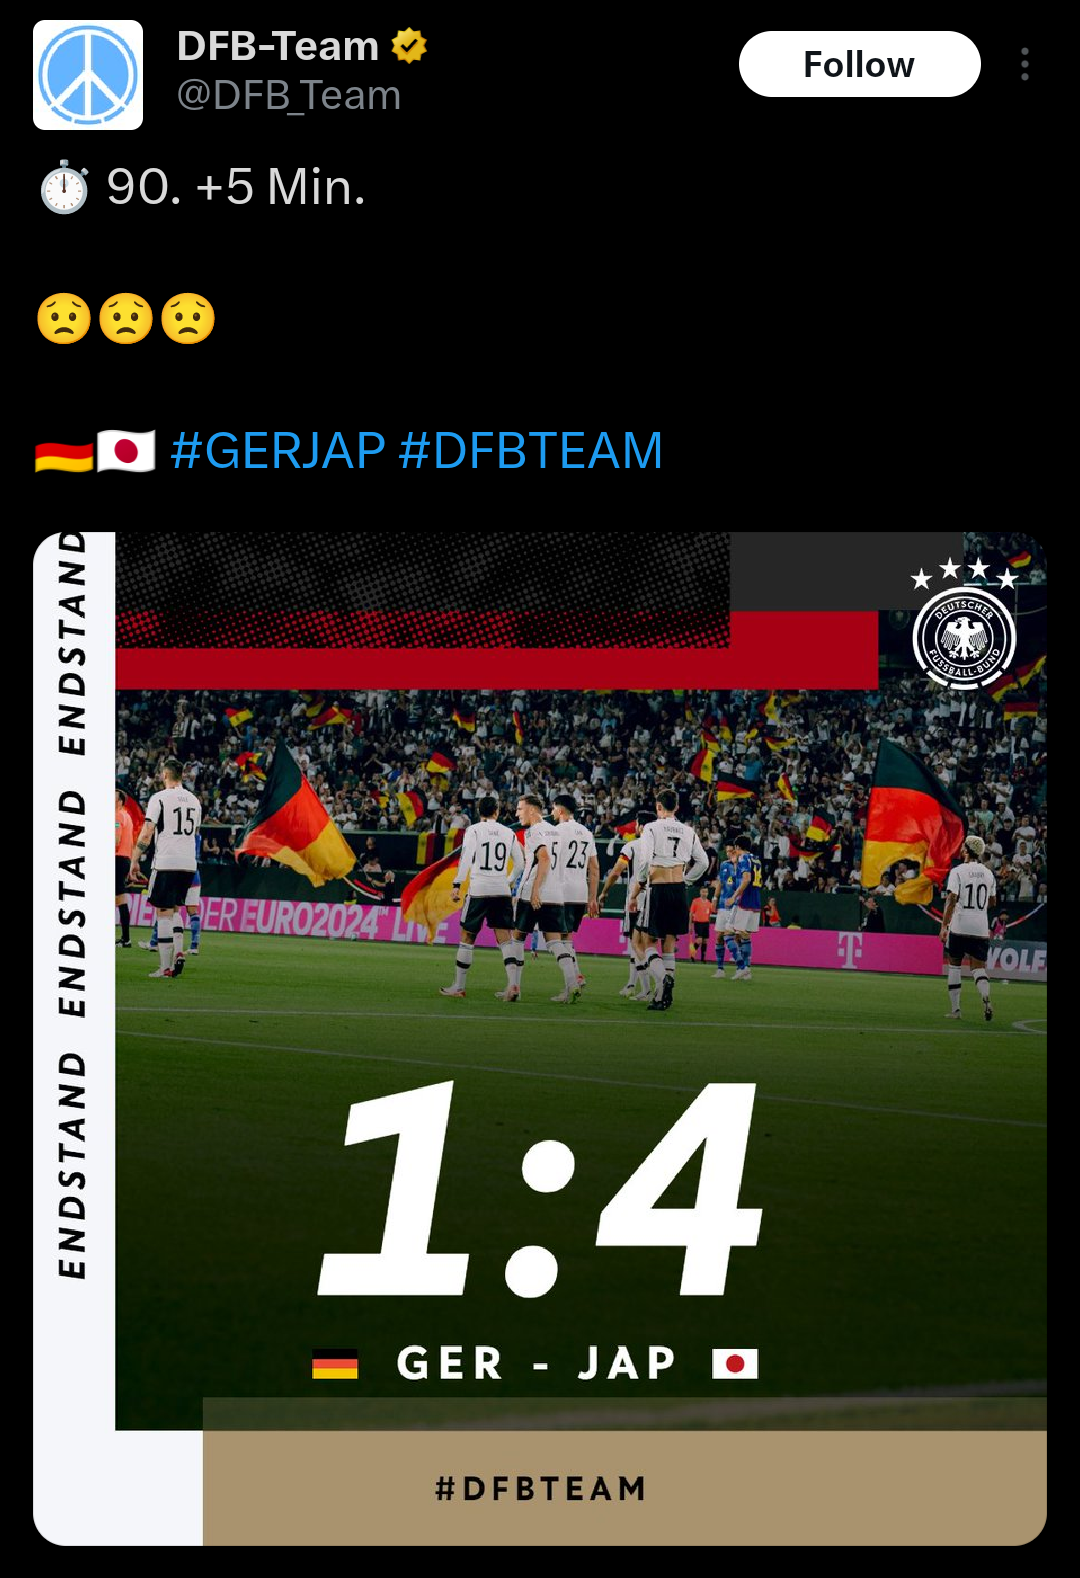 【悲報】 ドイツ公式さん、サッカーで負けた途端JAP表記にしてしまう  [303493227]\n_2